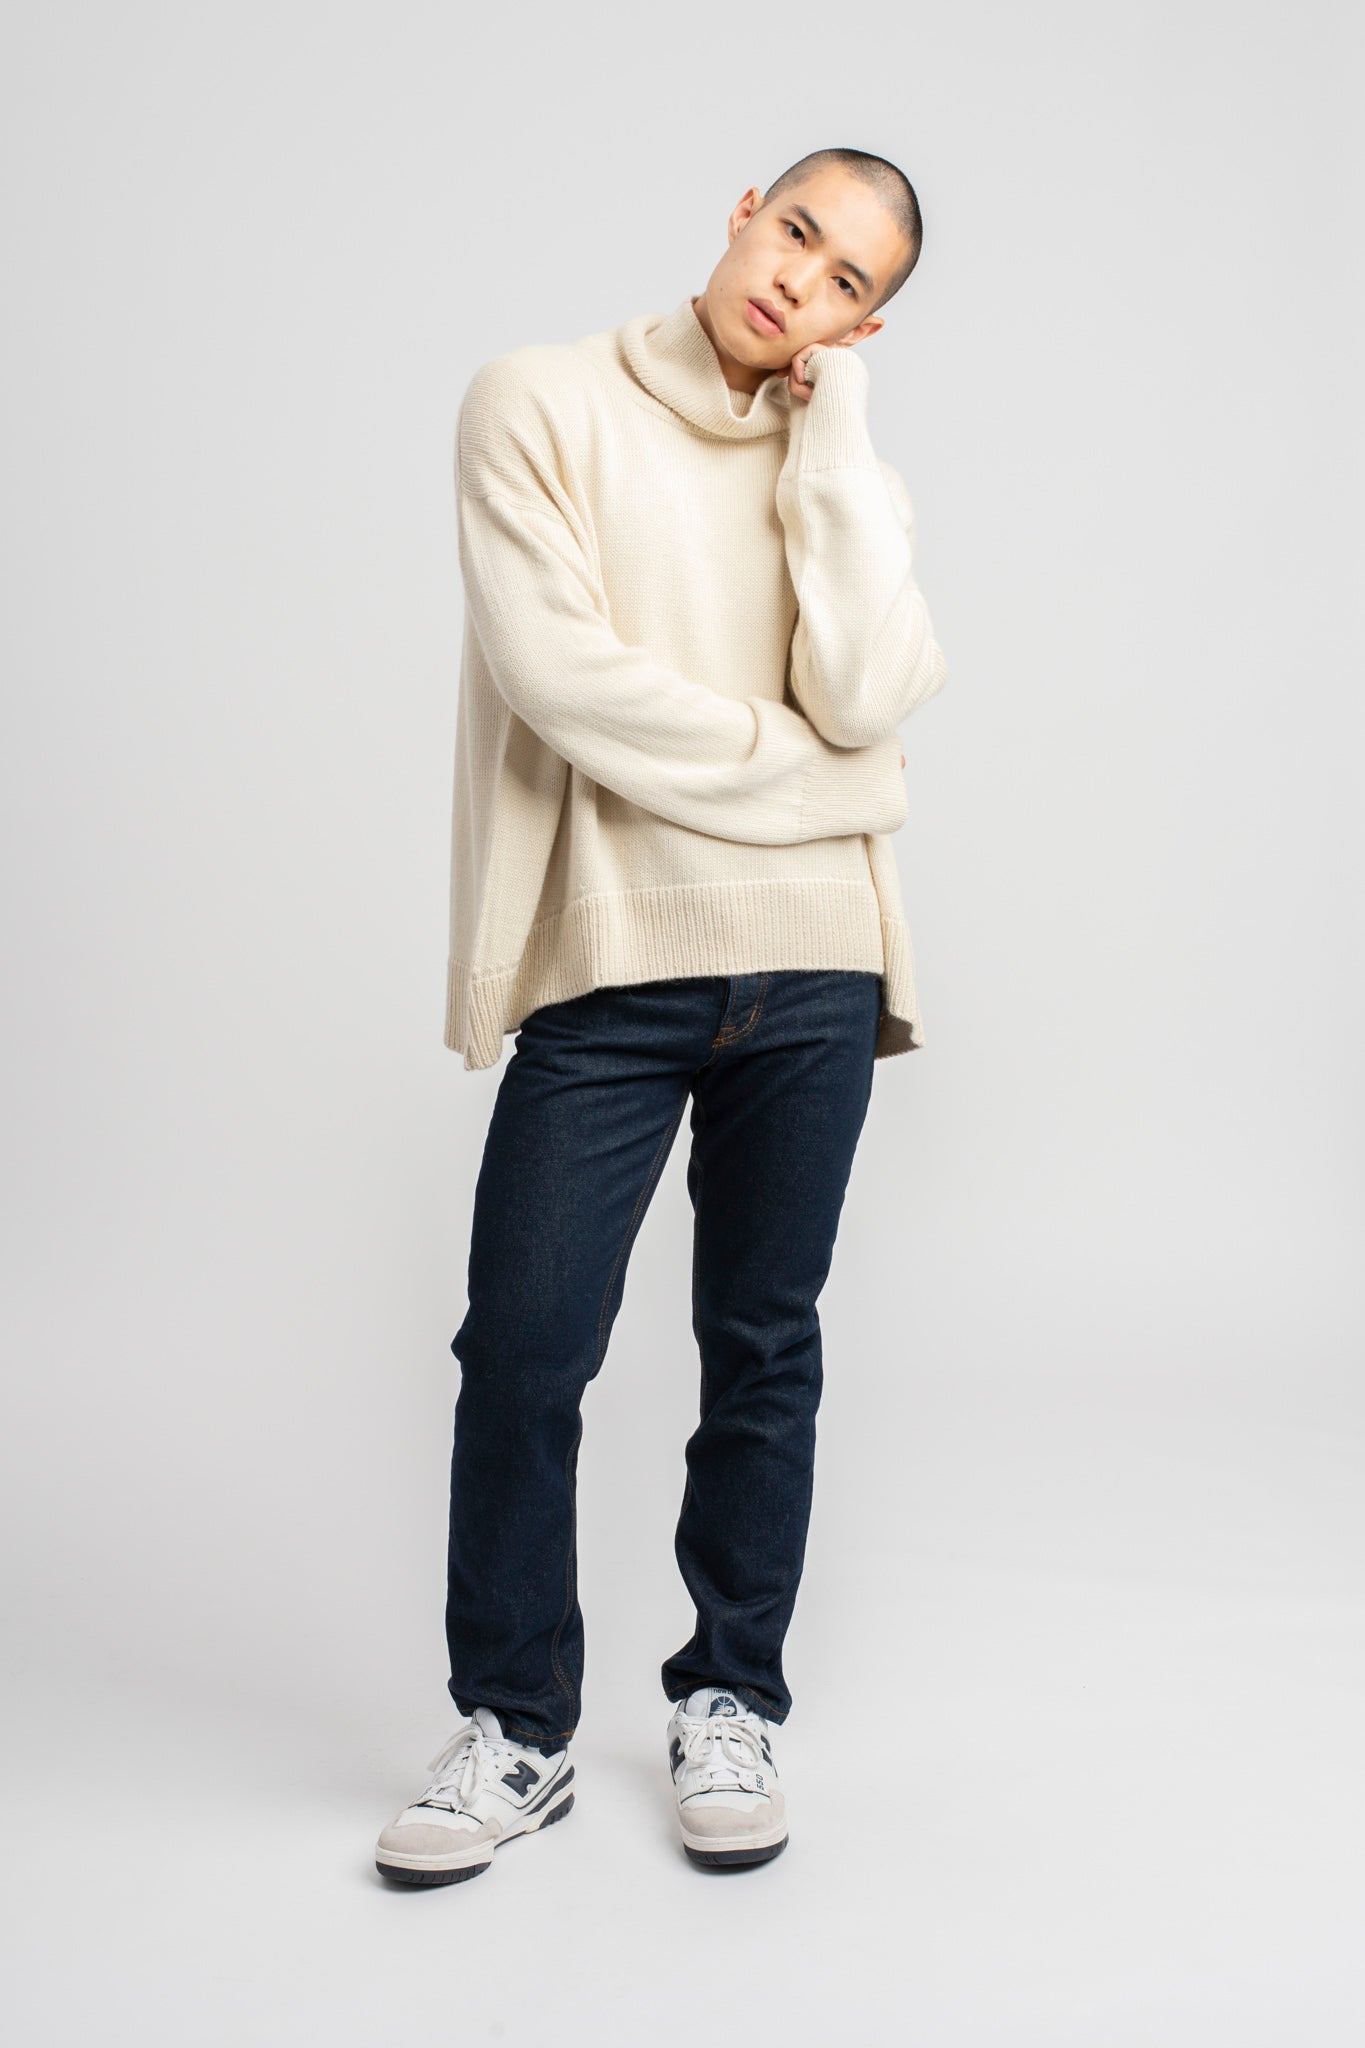 Model wearing turtleneck oversized sweater in white alpaca wool, head to side